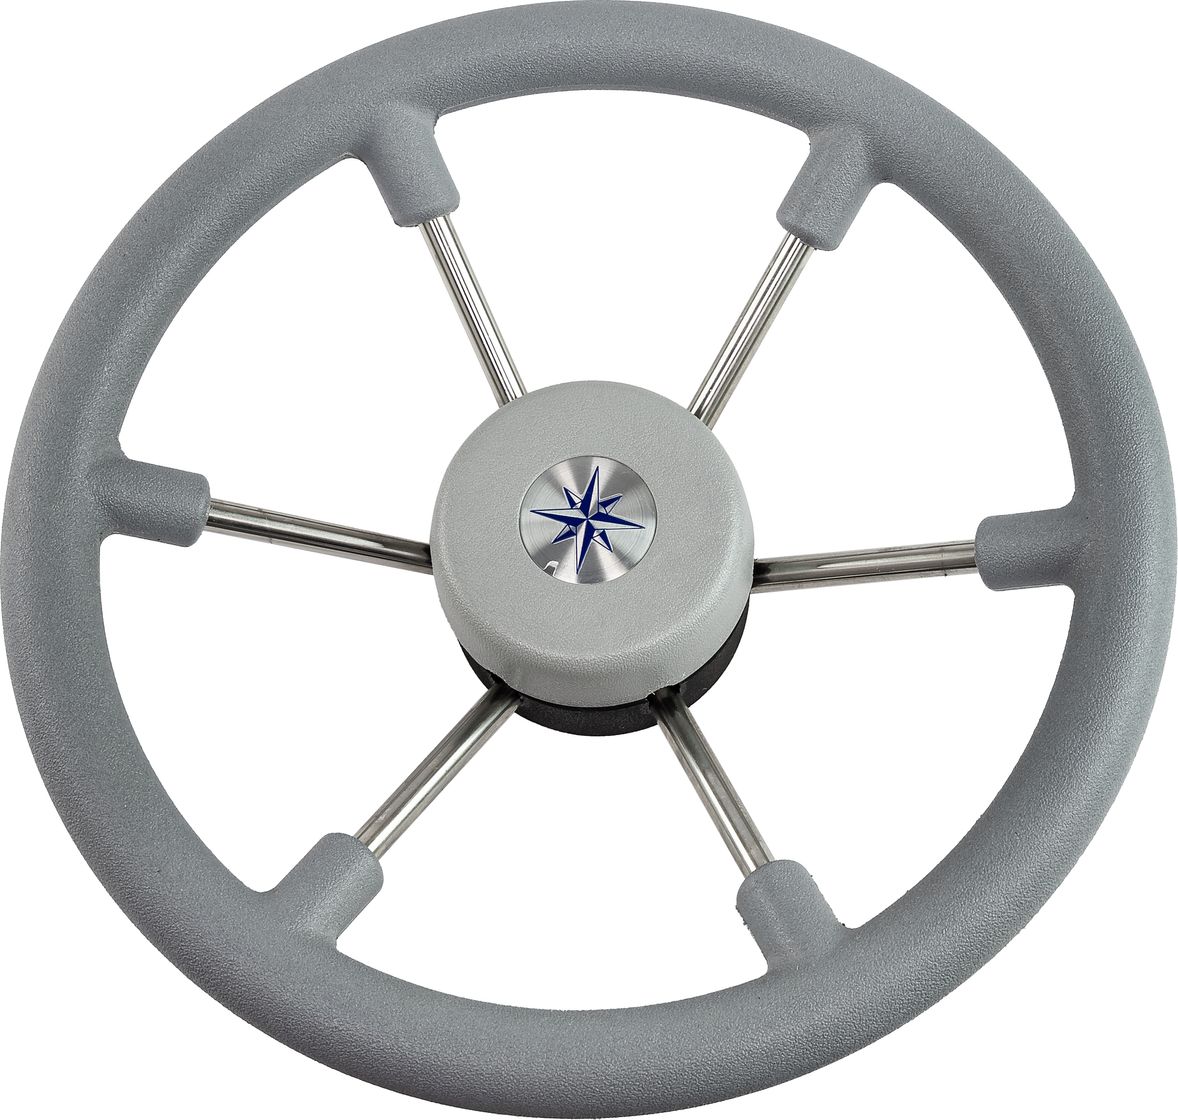 Рулевое колесо LEADER TANEGUM серый обод серебряные спицы д. 330 мм VN7330-03 рулевое колесо leader tanegum белый обод серебряные спицы д 360 мм vn7360 08